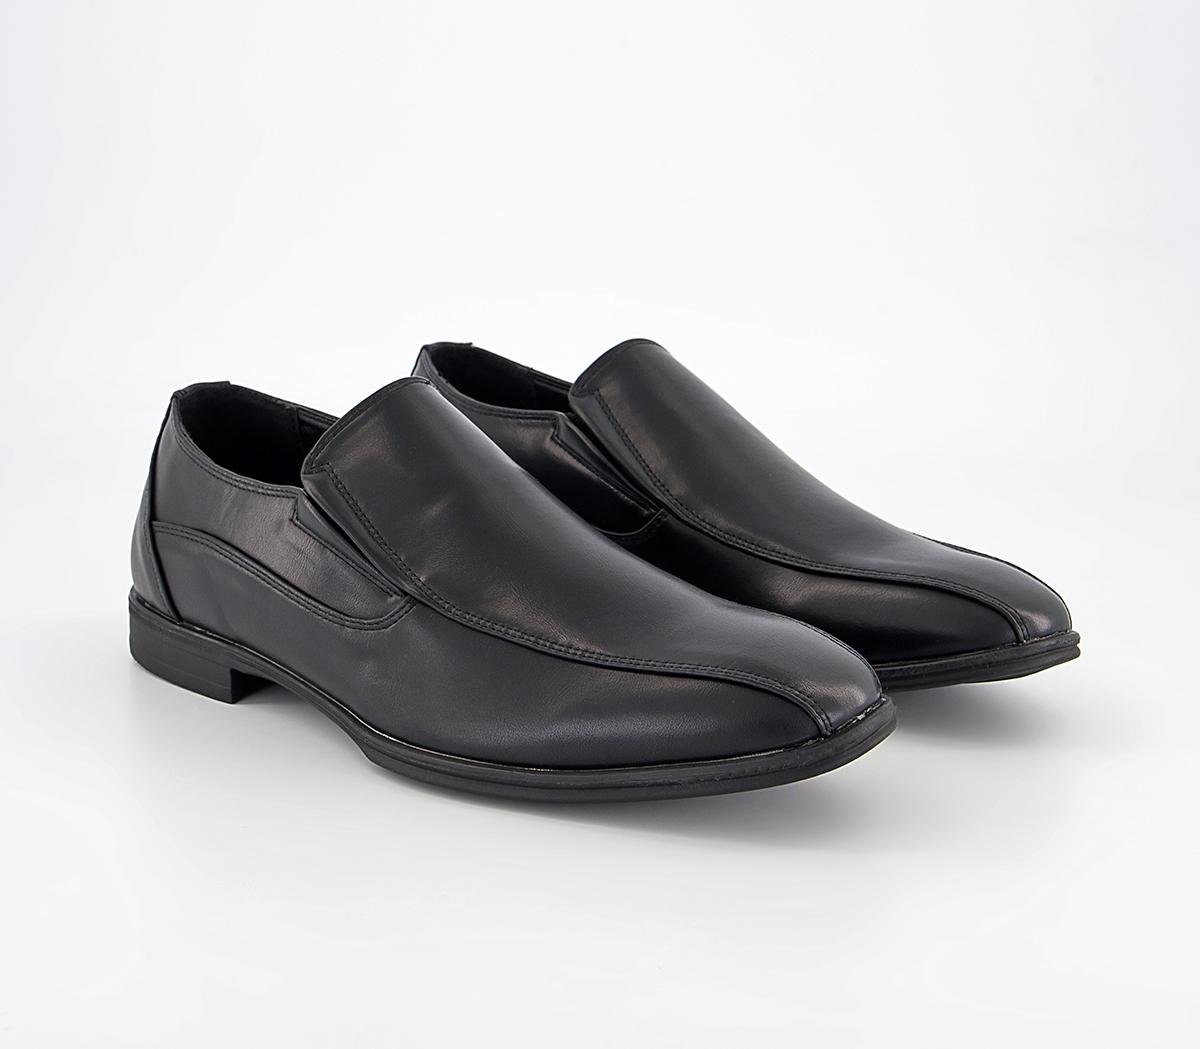 OFFICE Marv Tramline Slip On Shoes Black - Men’s Smart Shoes